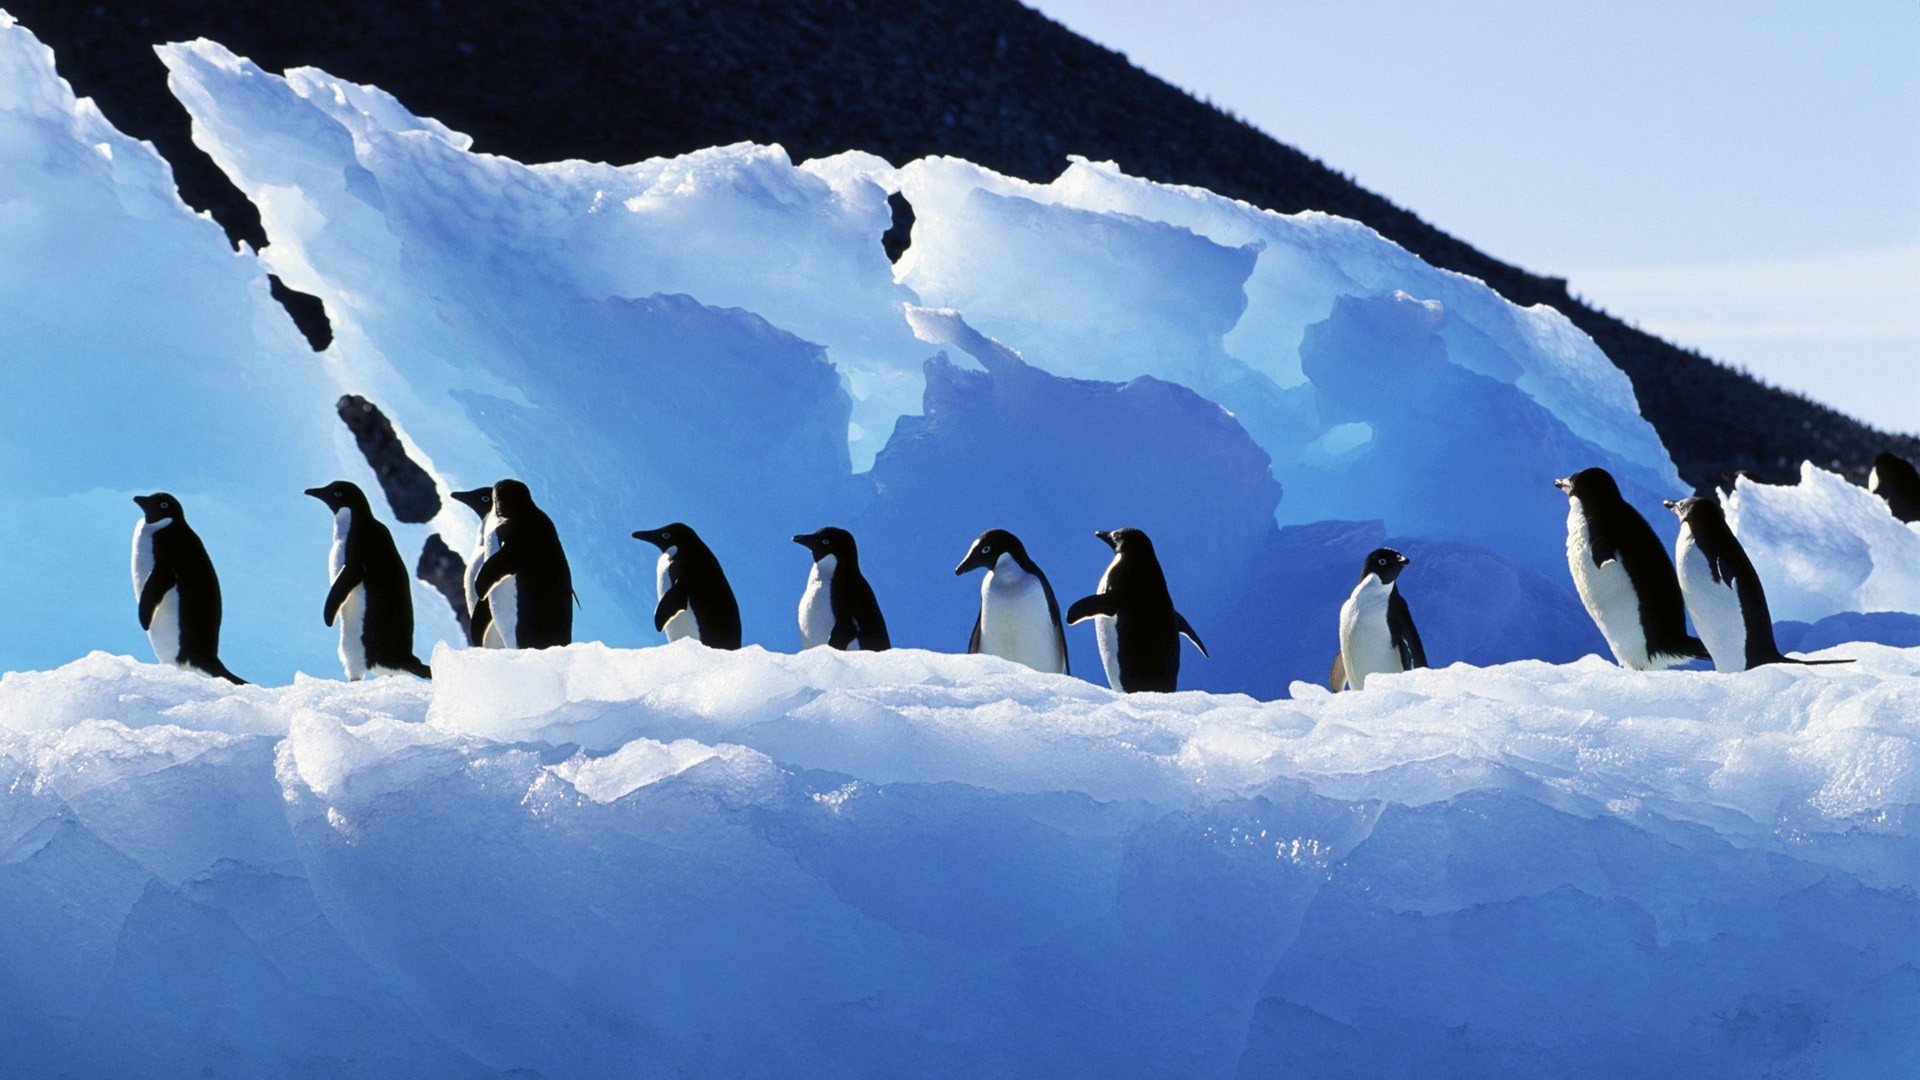 Antarctica birds, Penguin wallpapers, Desktop mobile backgrounds, 1920x1080 Full HD Desktop